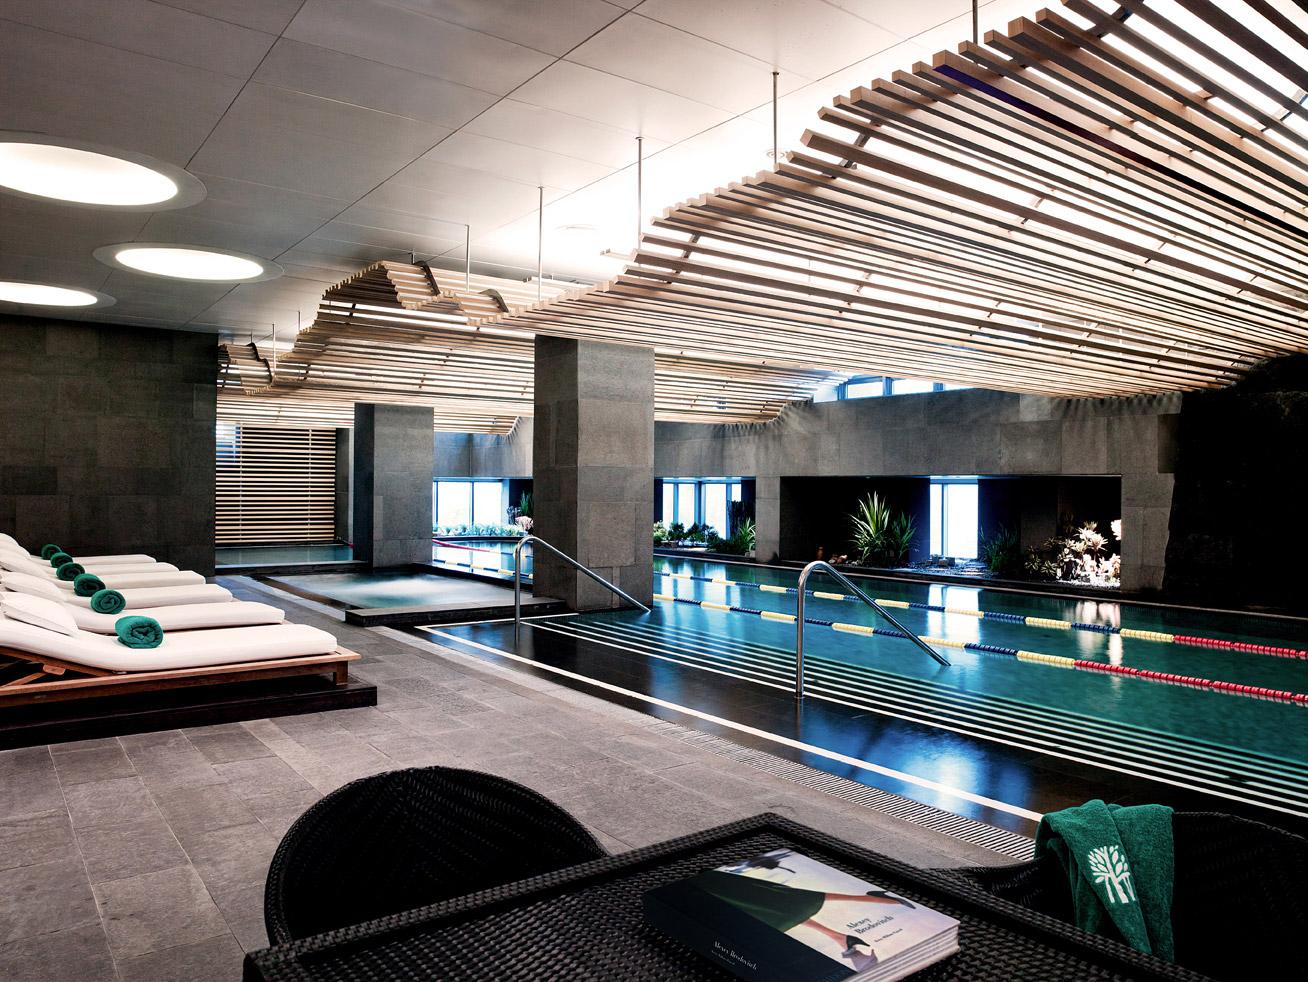 BTRKSE_Indoor-Swimming-Pool-1.jpg